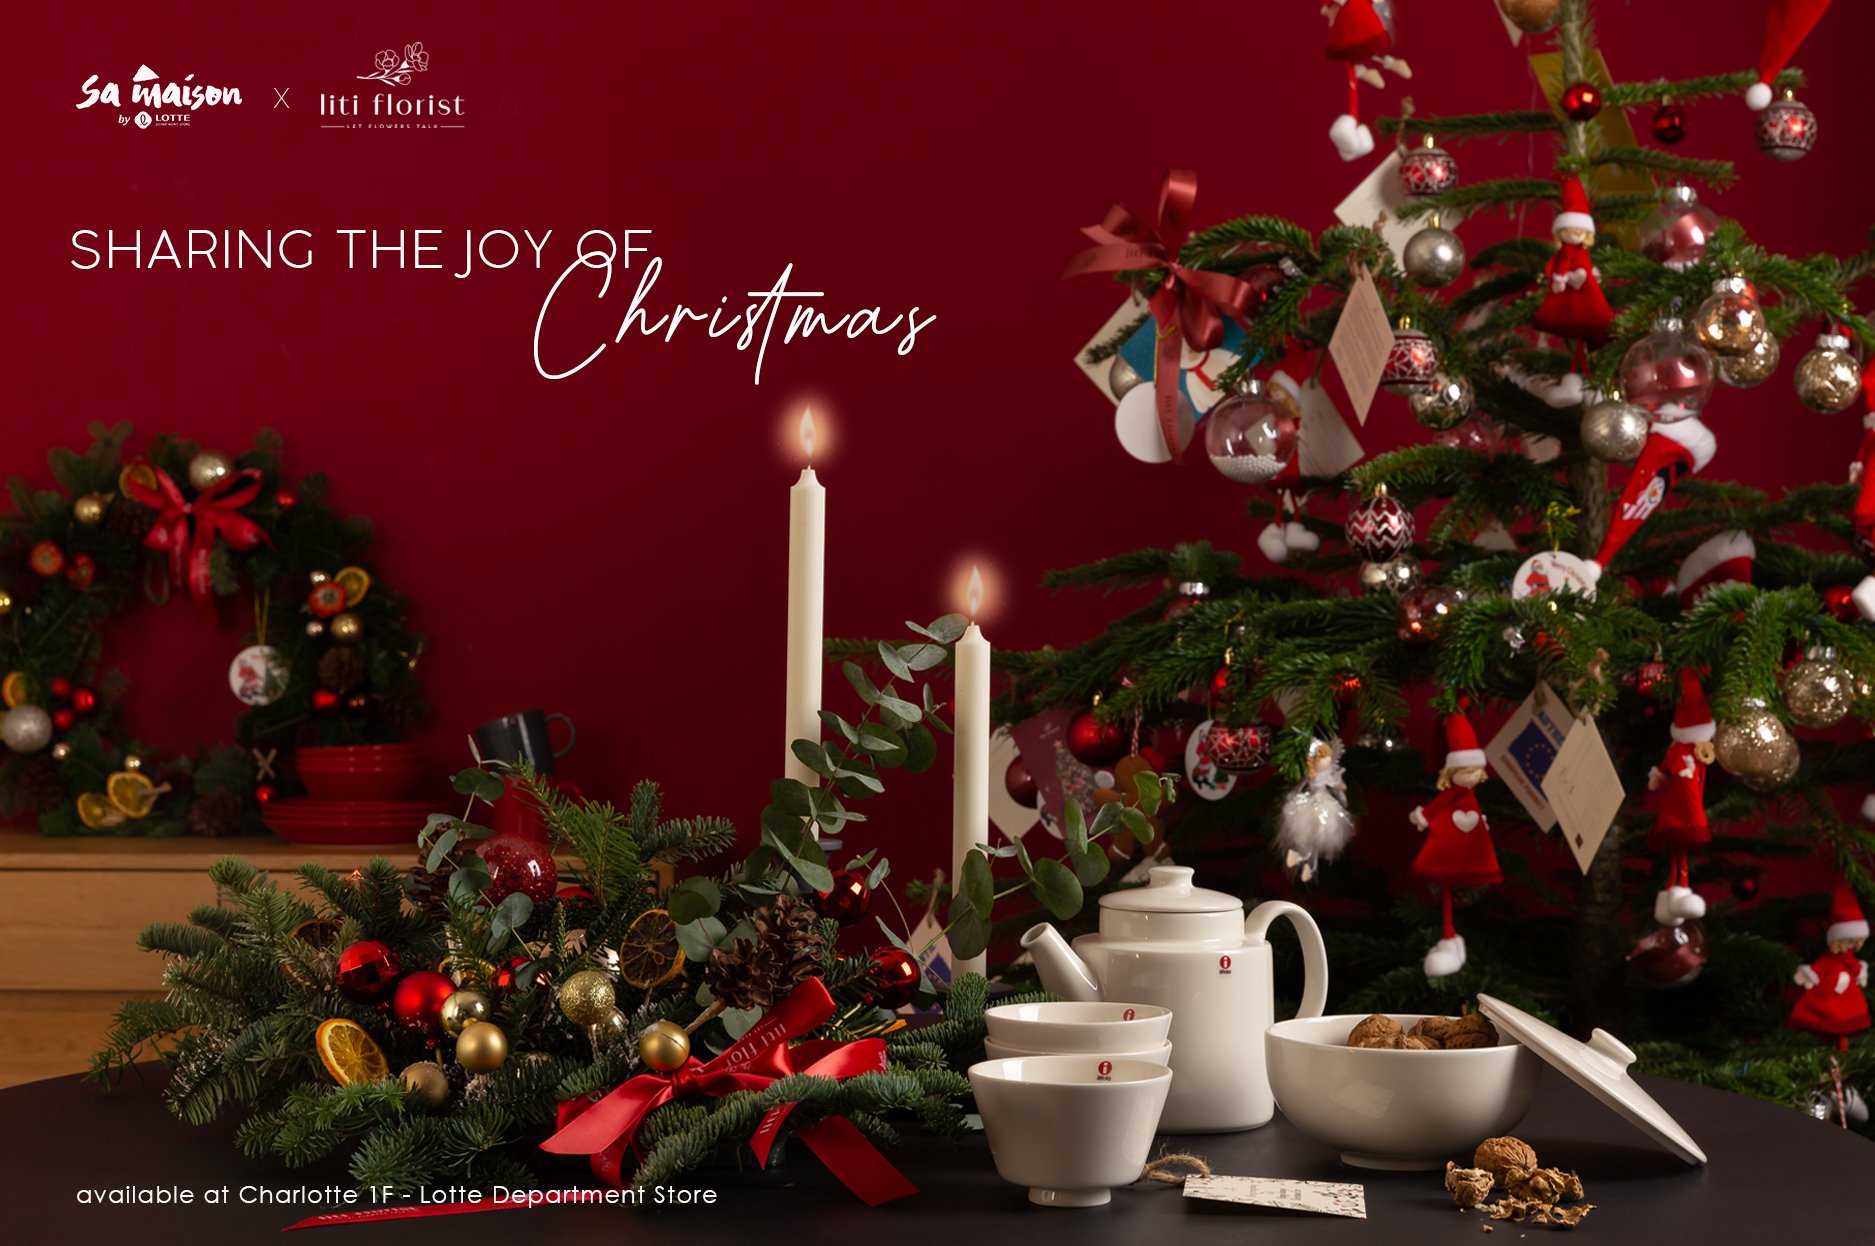 [Sa Maison x Liti Florist] Sharing the Joy of Christmas